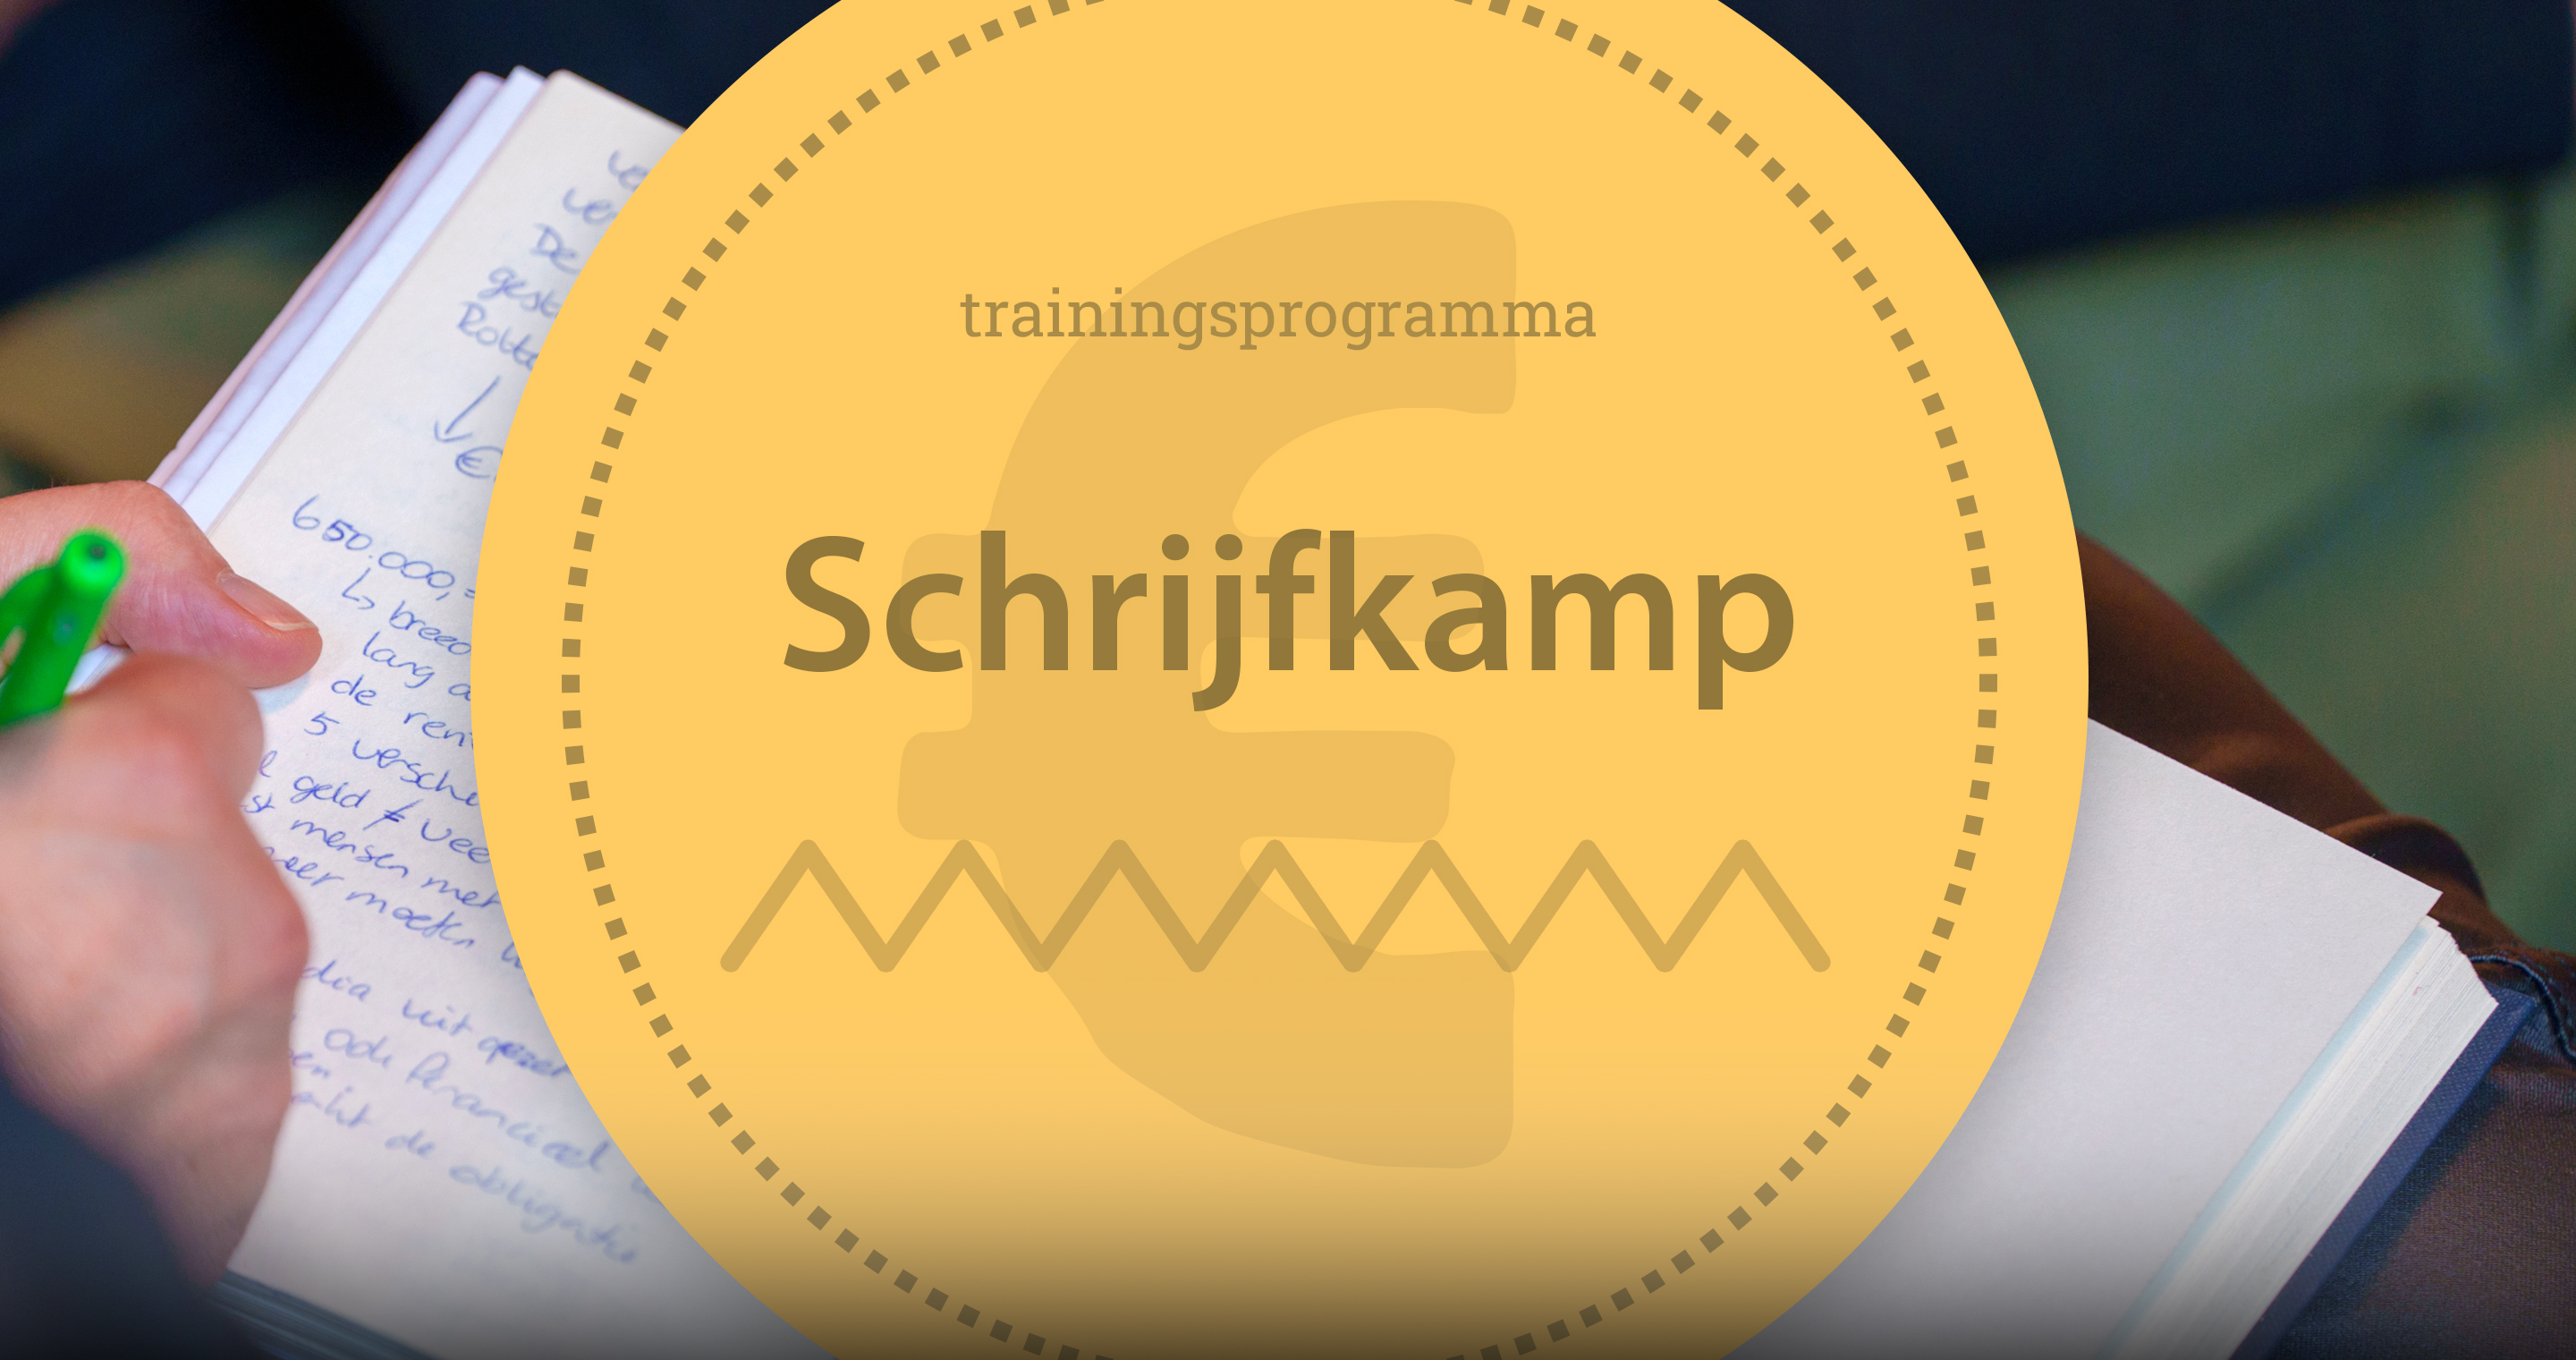 Schrijfkamp-website-visual